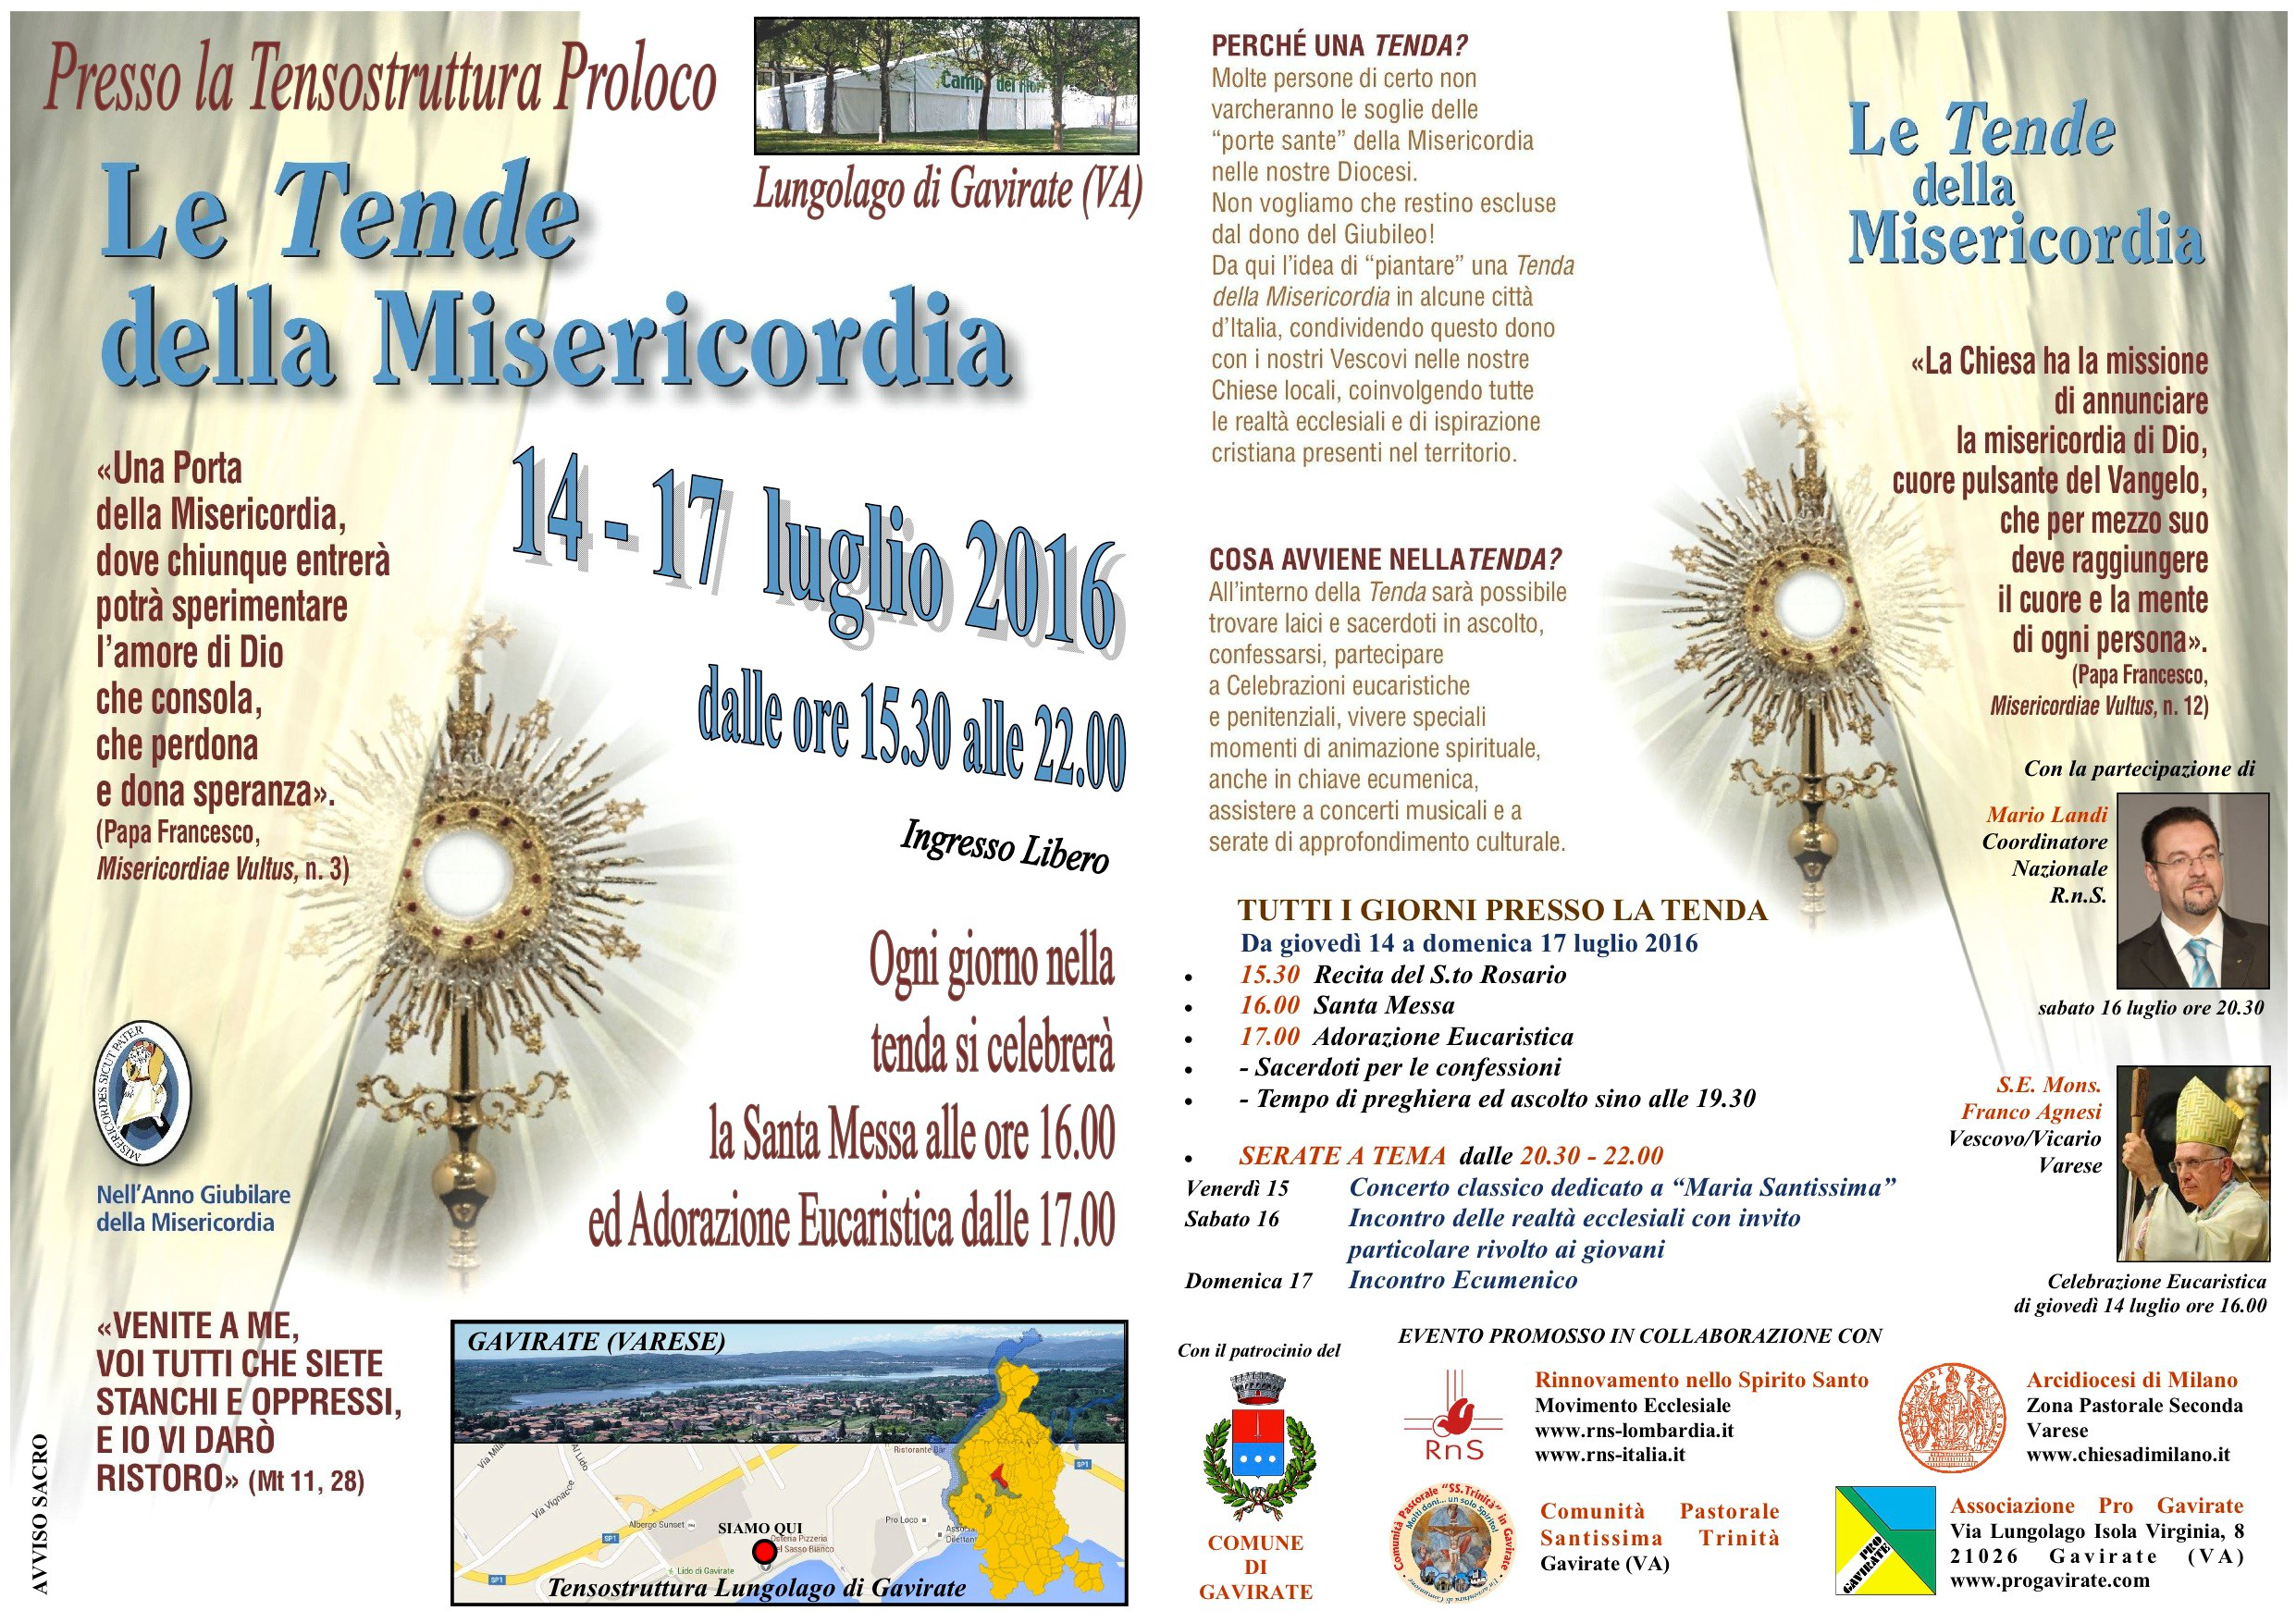 Lombardia Misericordia 2016 